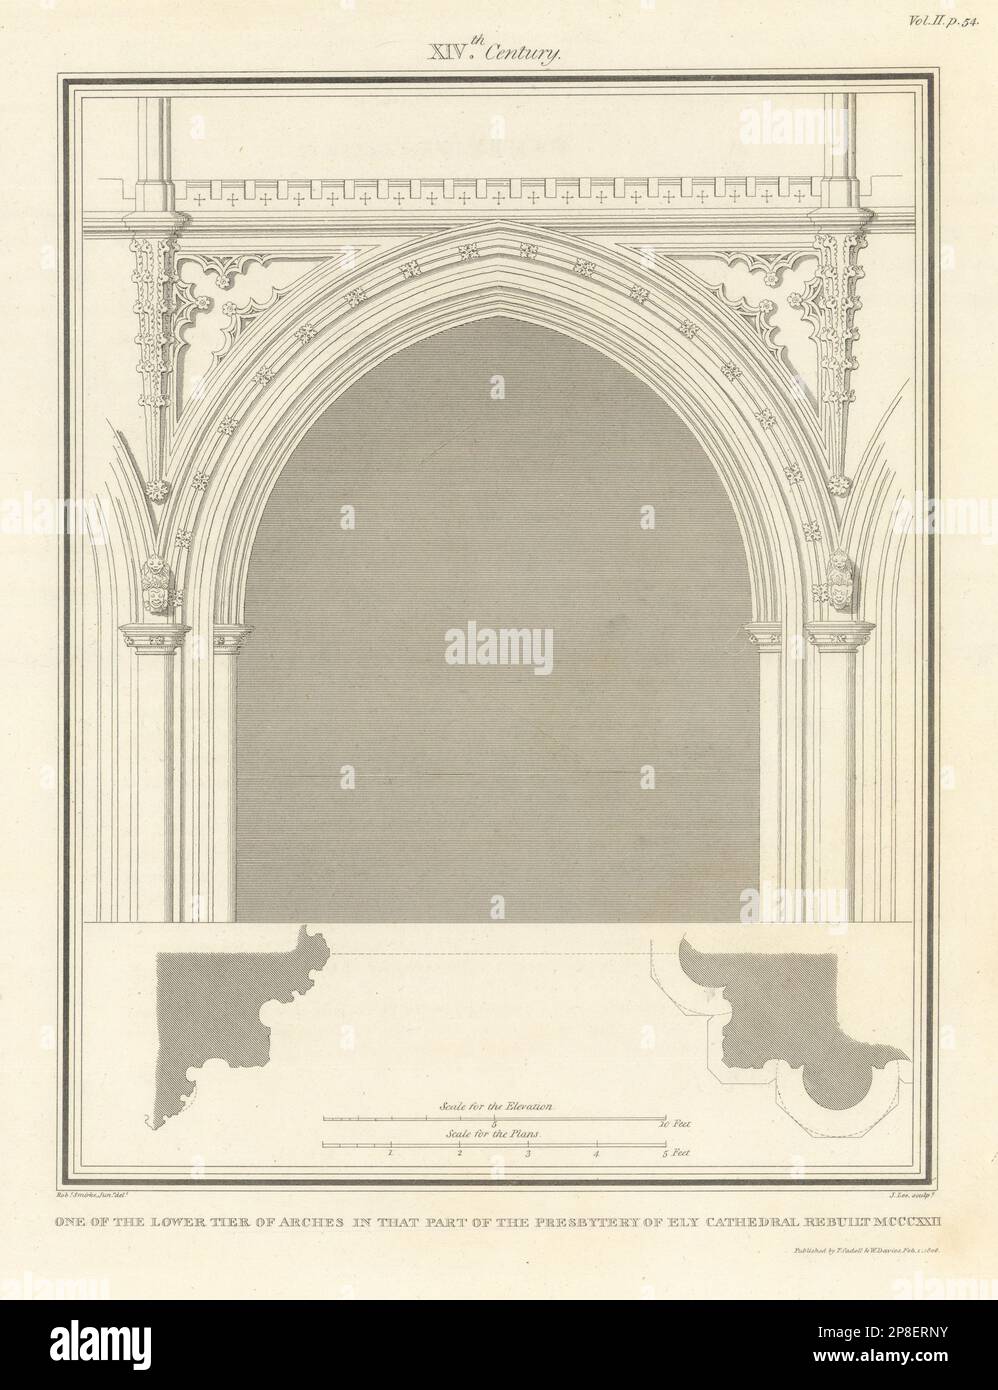 Uno dei piani inferiori degli archi nel Presbiterio della Cattedrale di Ely. SMARKE 1810 Foto Stock